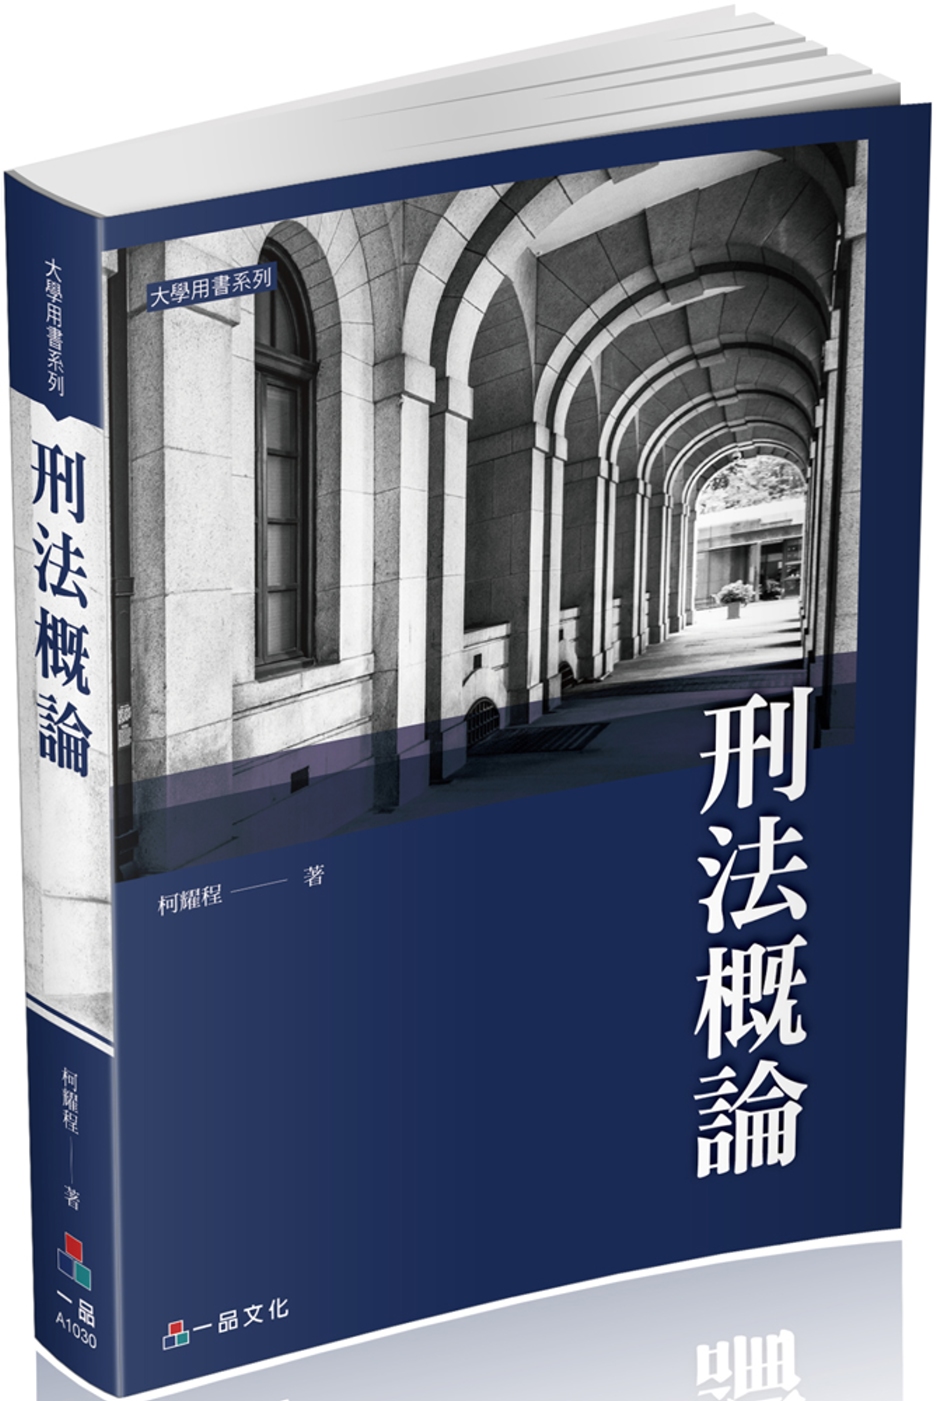 刑法概論-大學用書系列(經銷書)<一品>二版